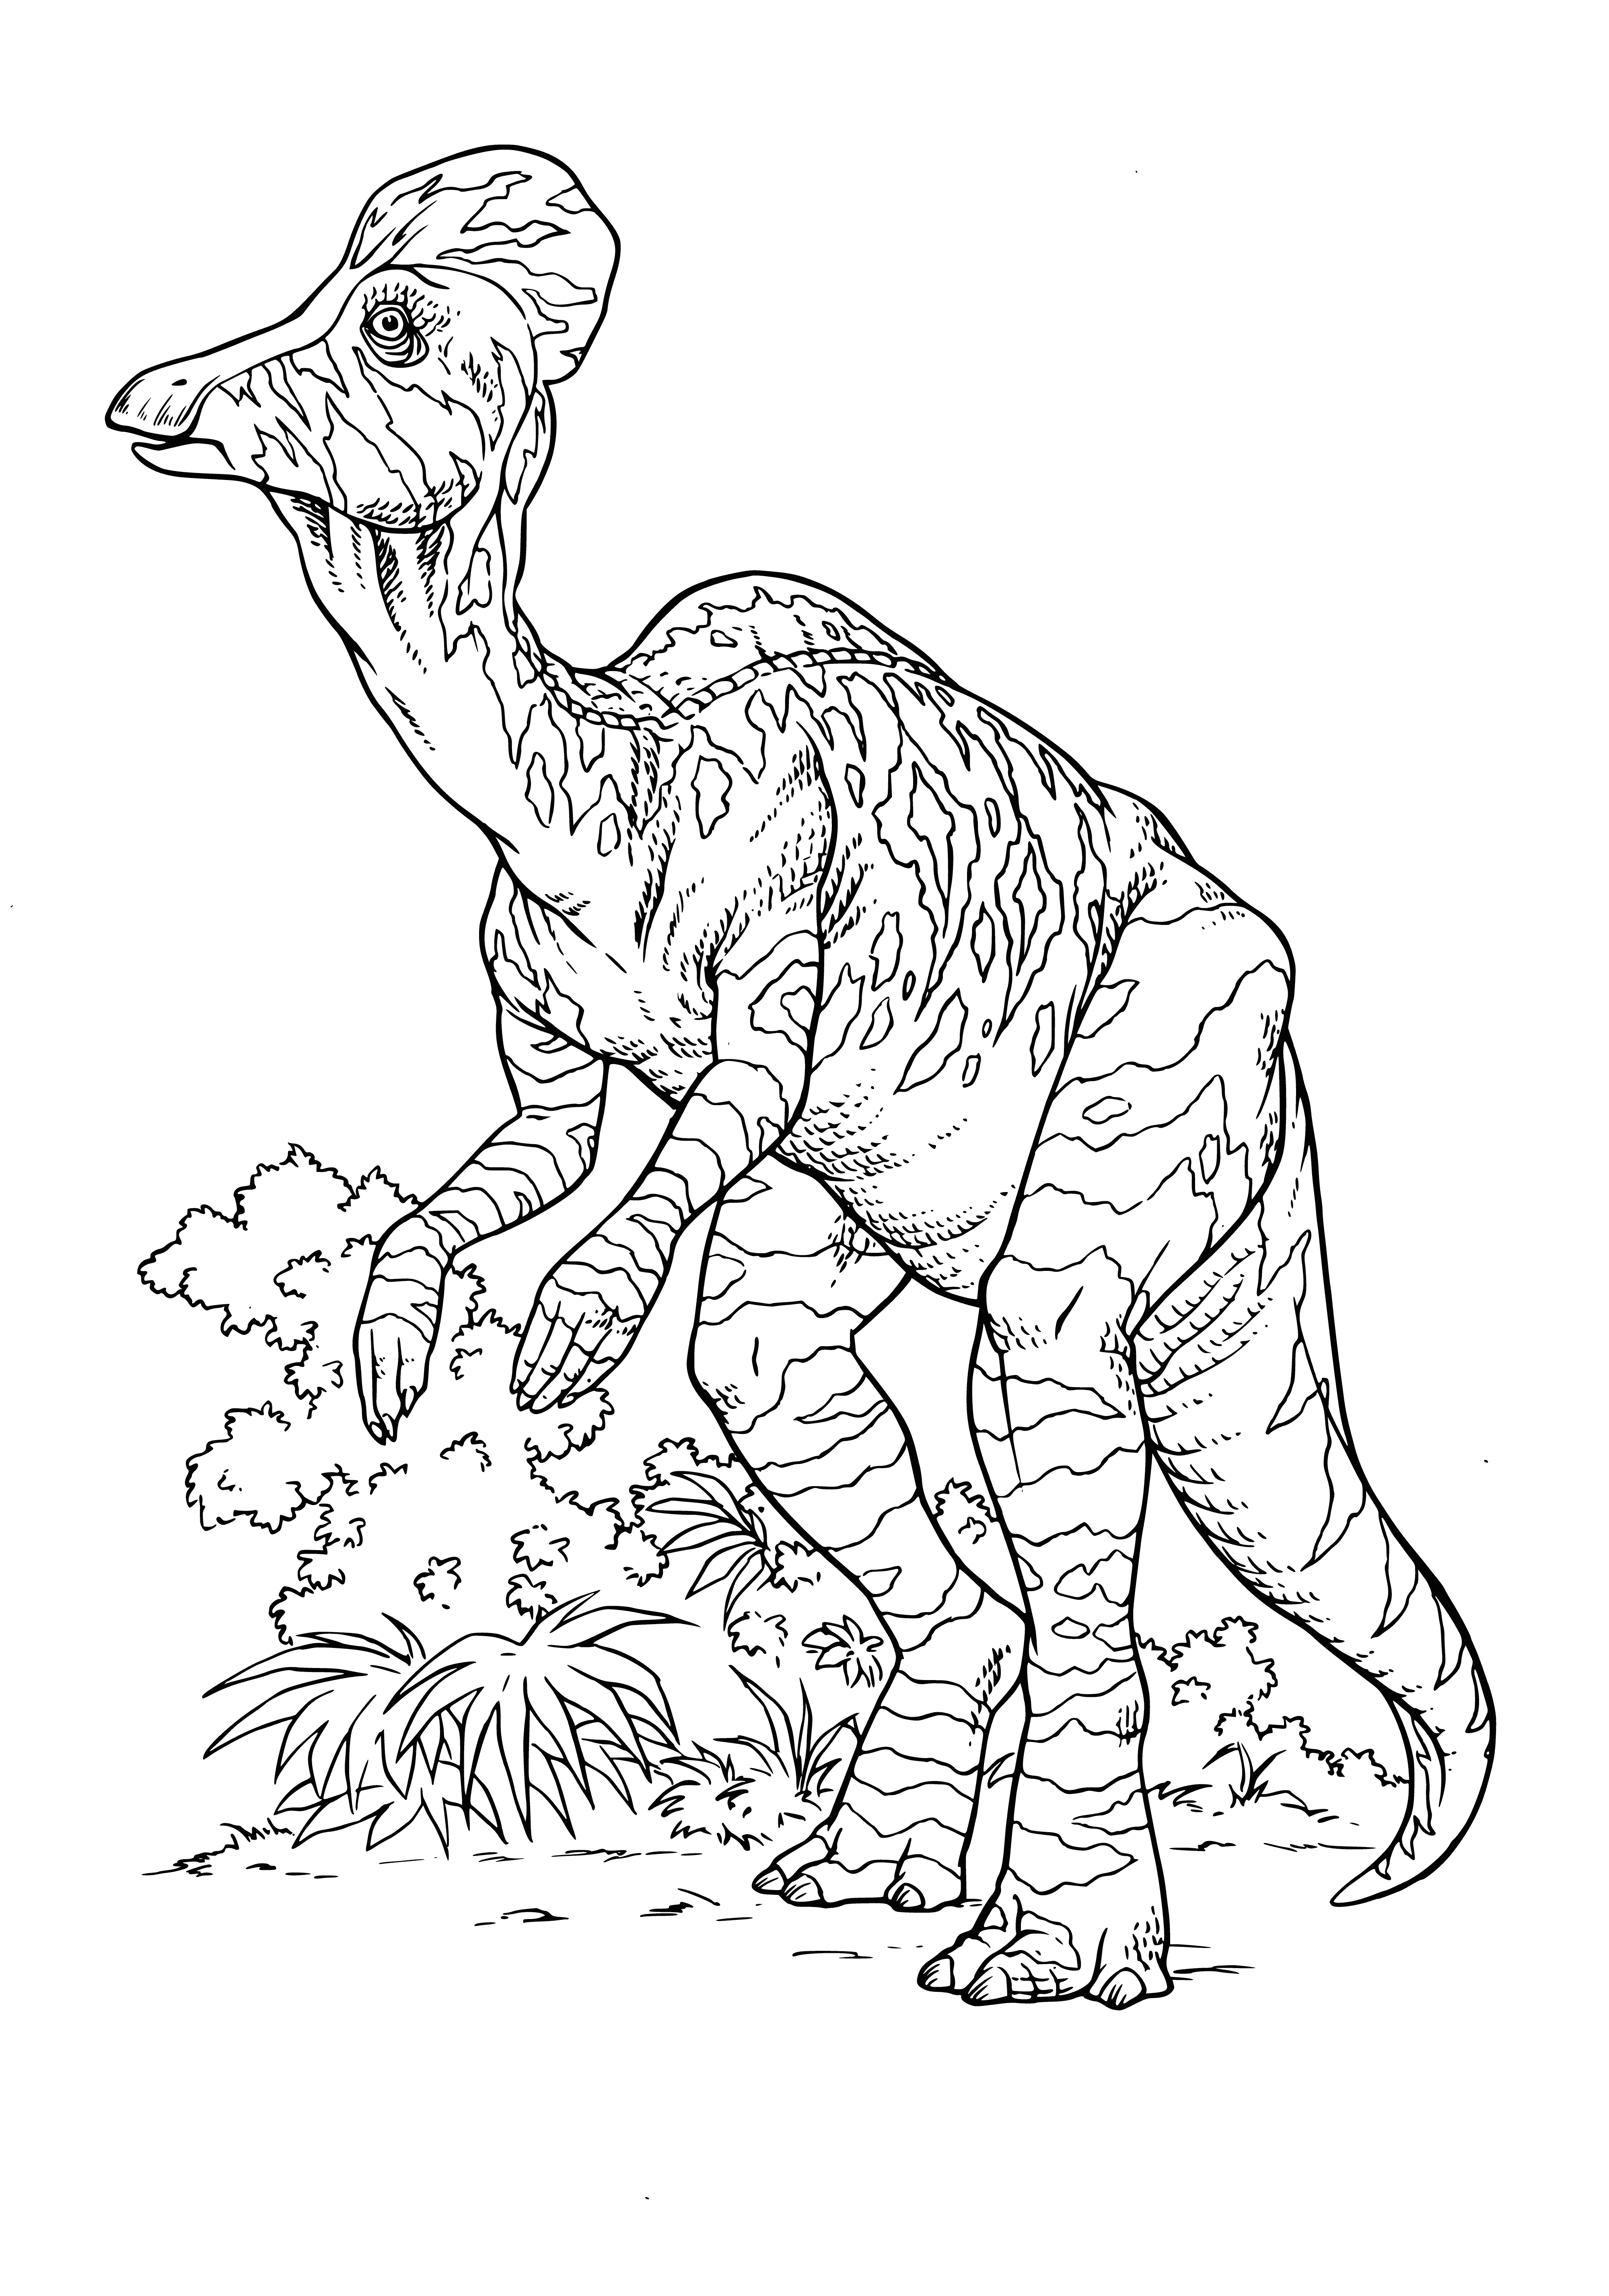 Corytosaurus coloring page